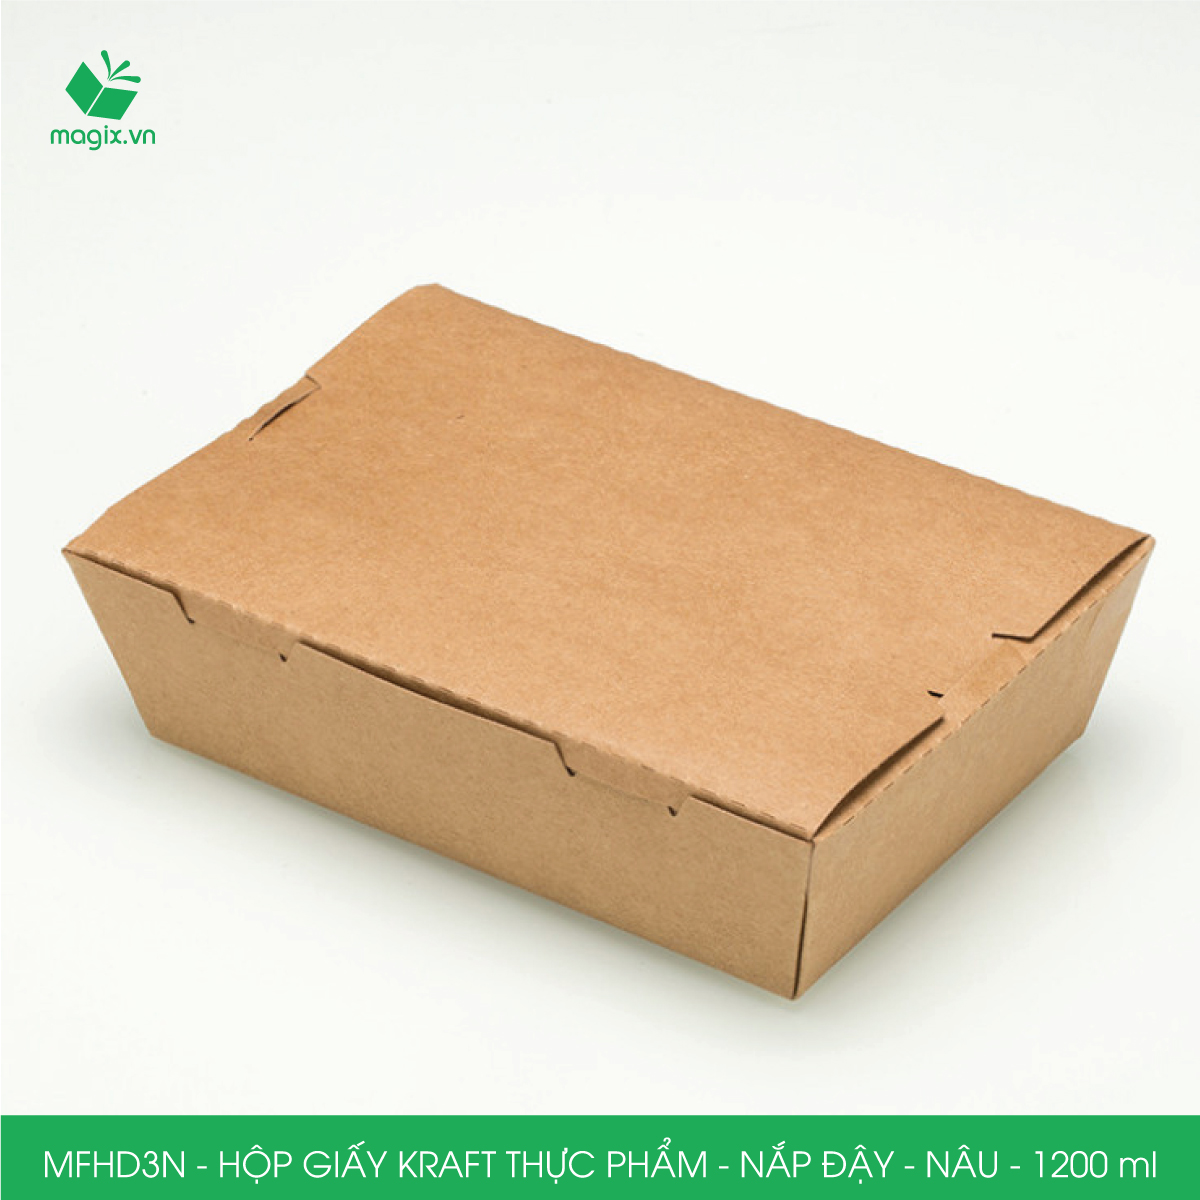 MFHD3N - Combo 100 hộp giấy kraft thực phẩm 1200ml, hộp đựng thức ăn nắp đậy màu nâu, hộp gói đồ ăn mang đi